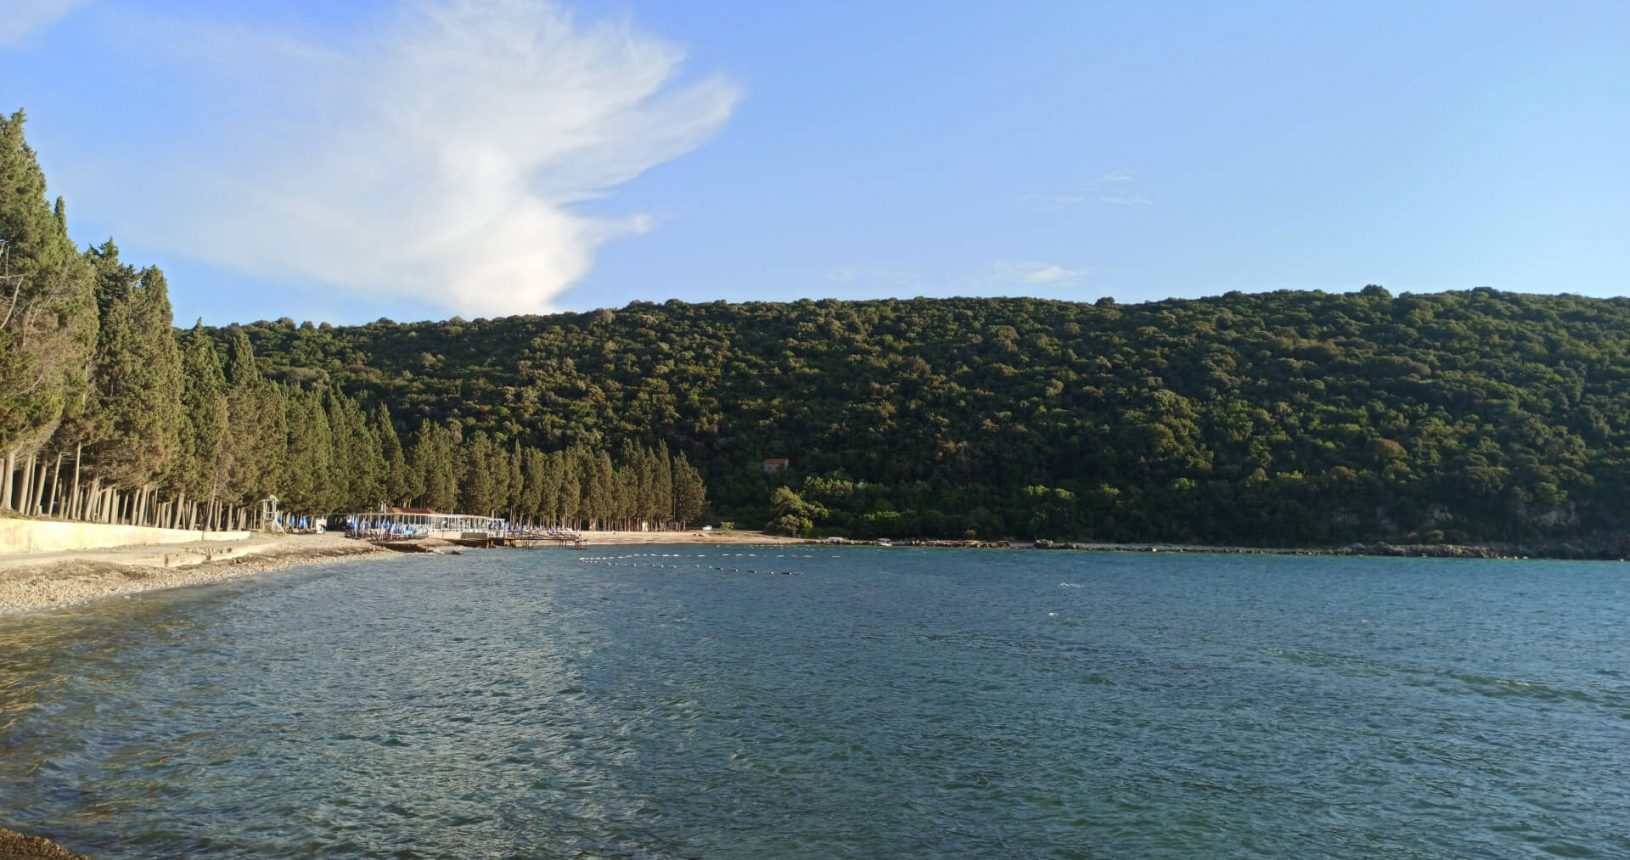 Green coastline. Landscape view of Valdanos beach